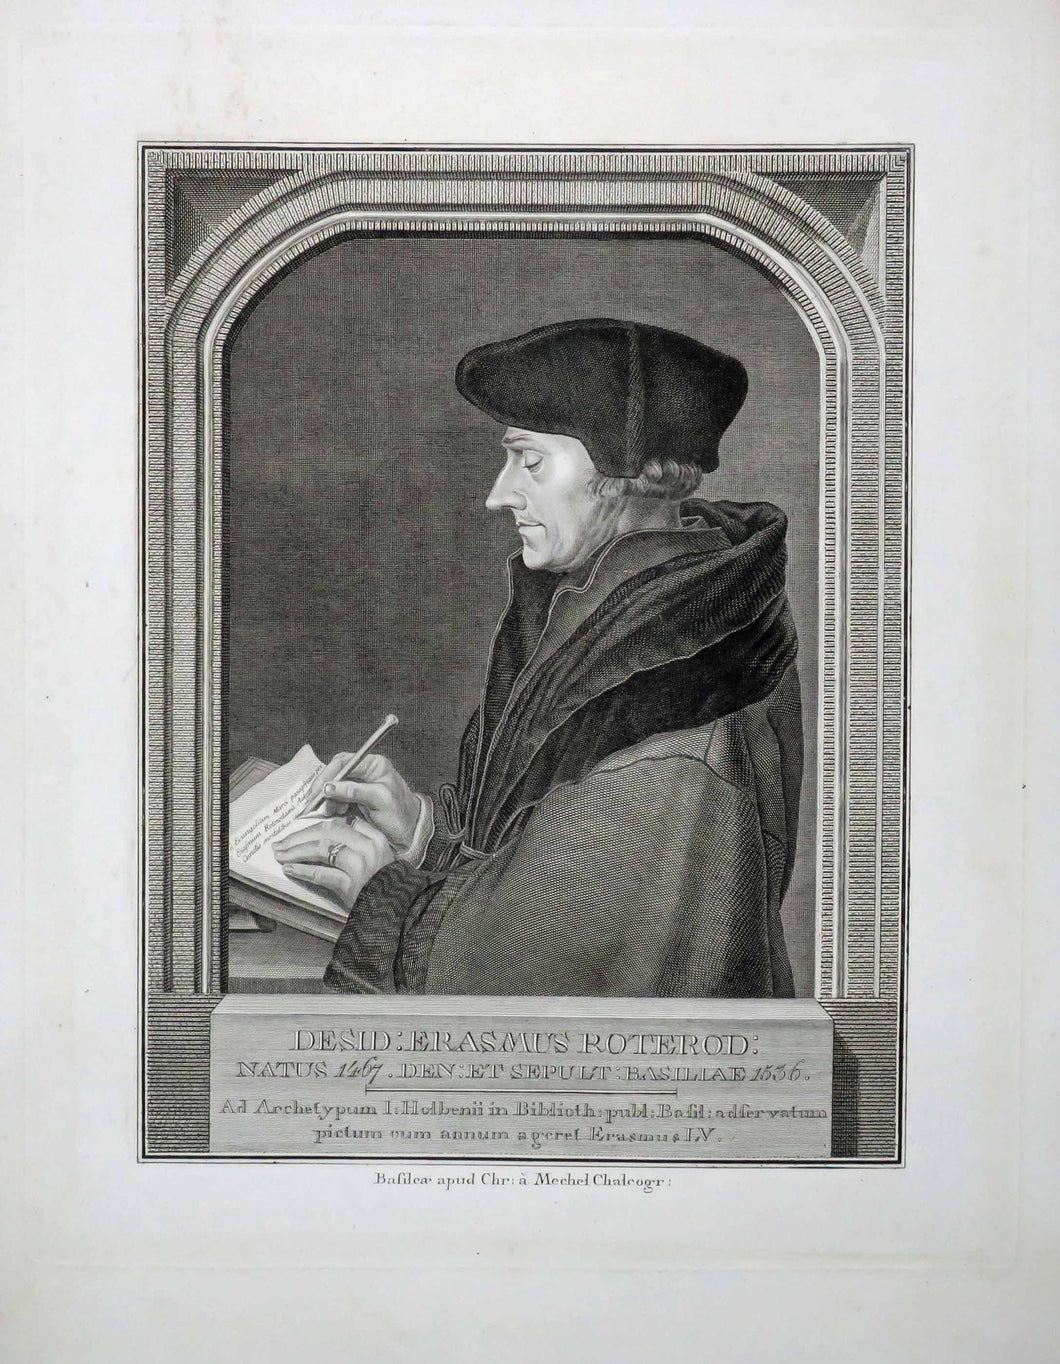 Portrait d'Erasmus, philosophe et théologien des Pays-Bas bourguignons, considéré comme l’une des figures majeures de la culture européenne.